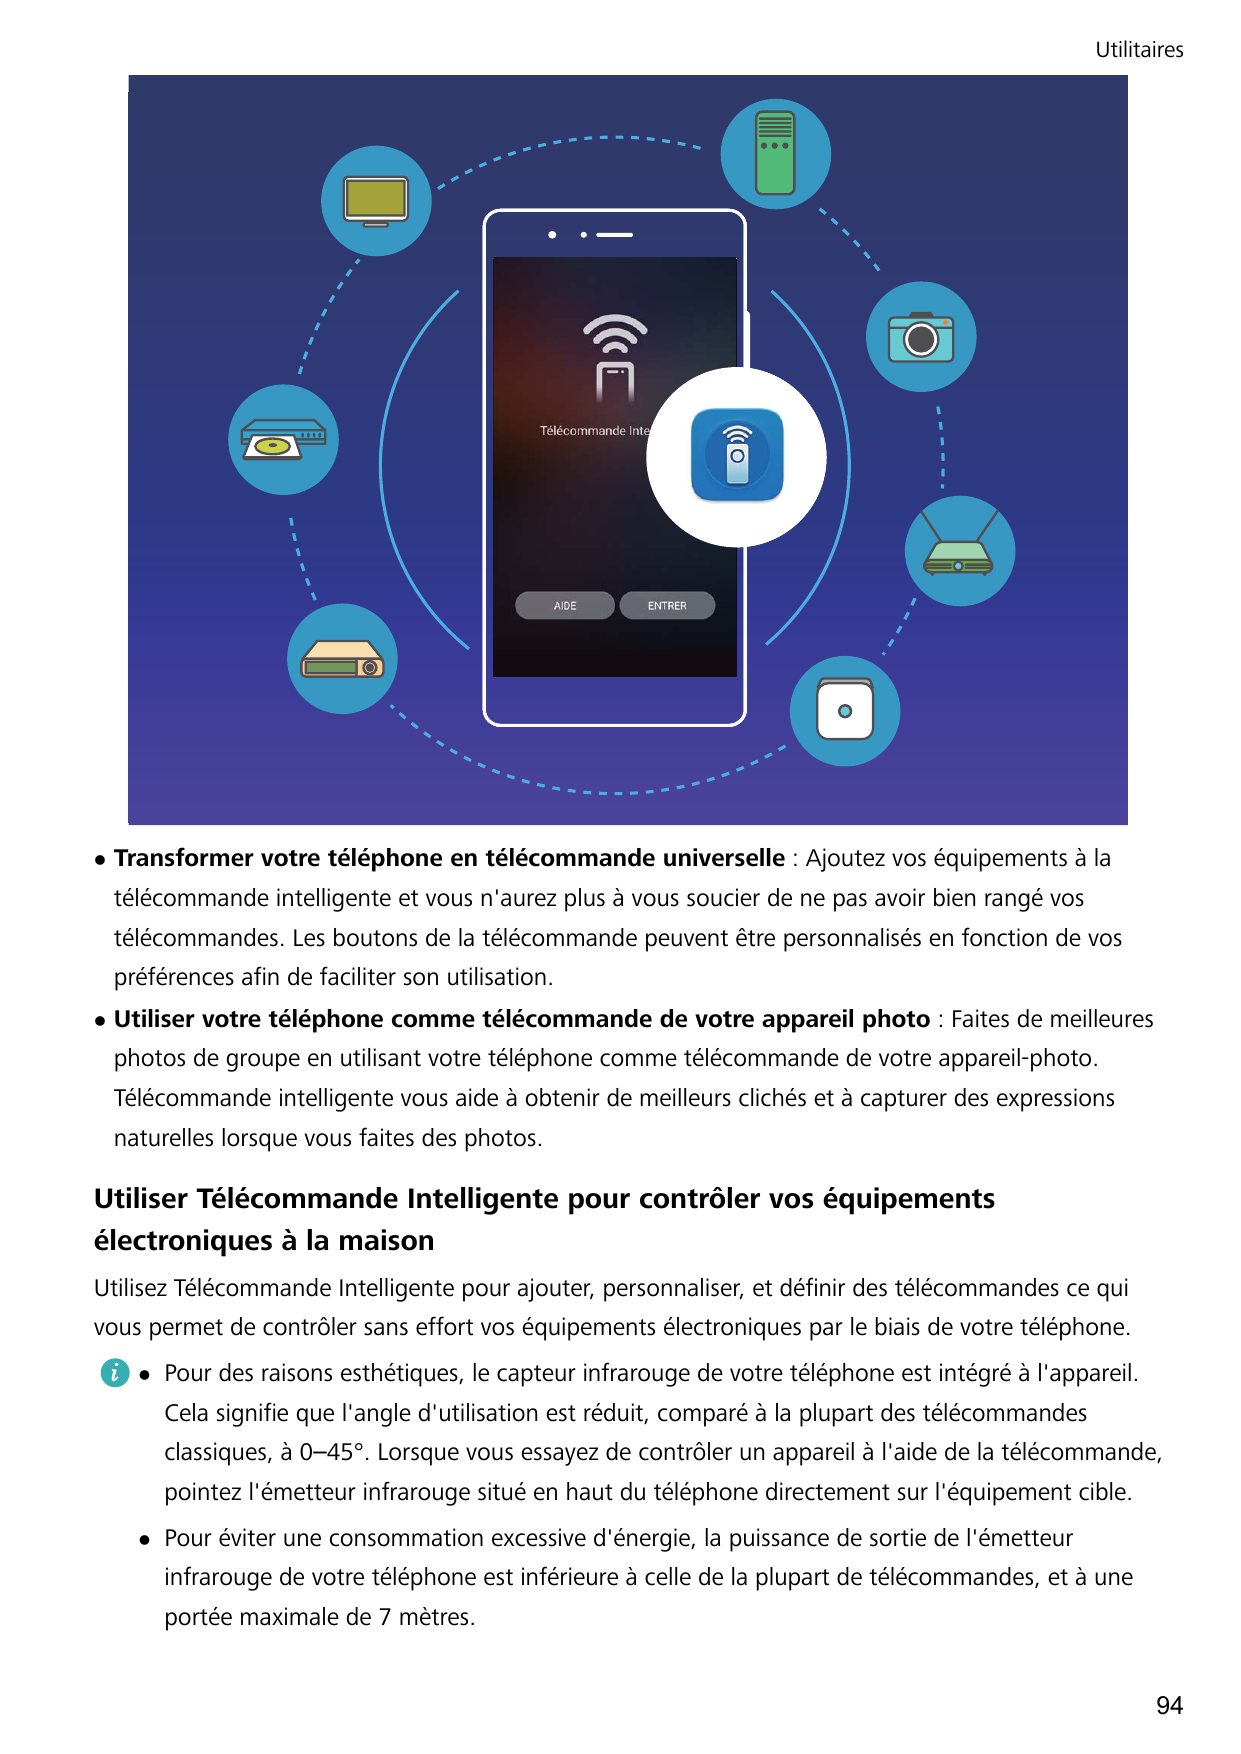 UtilitaireslTransformer votre téléphone en télécommande universelle : Ajoutez vos équipements à latélécommande intelligente et v